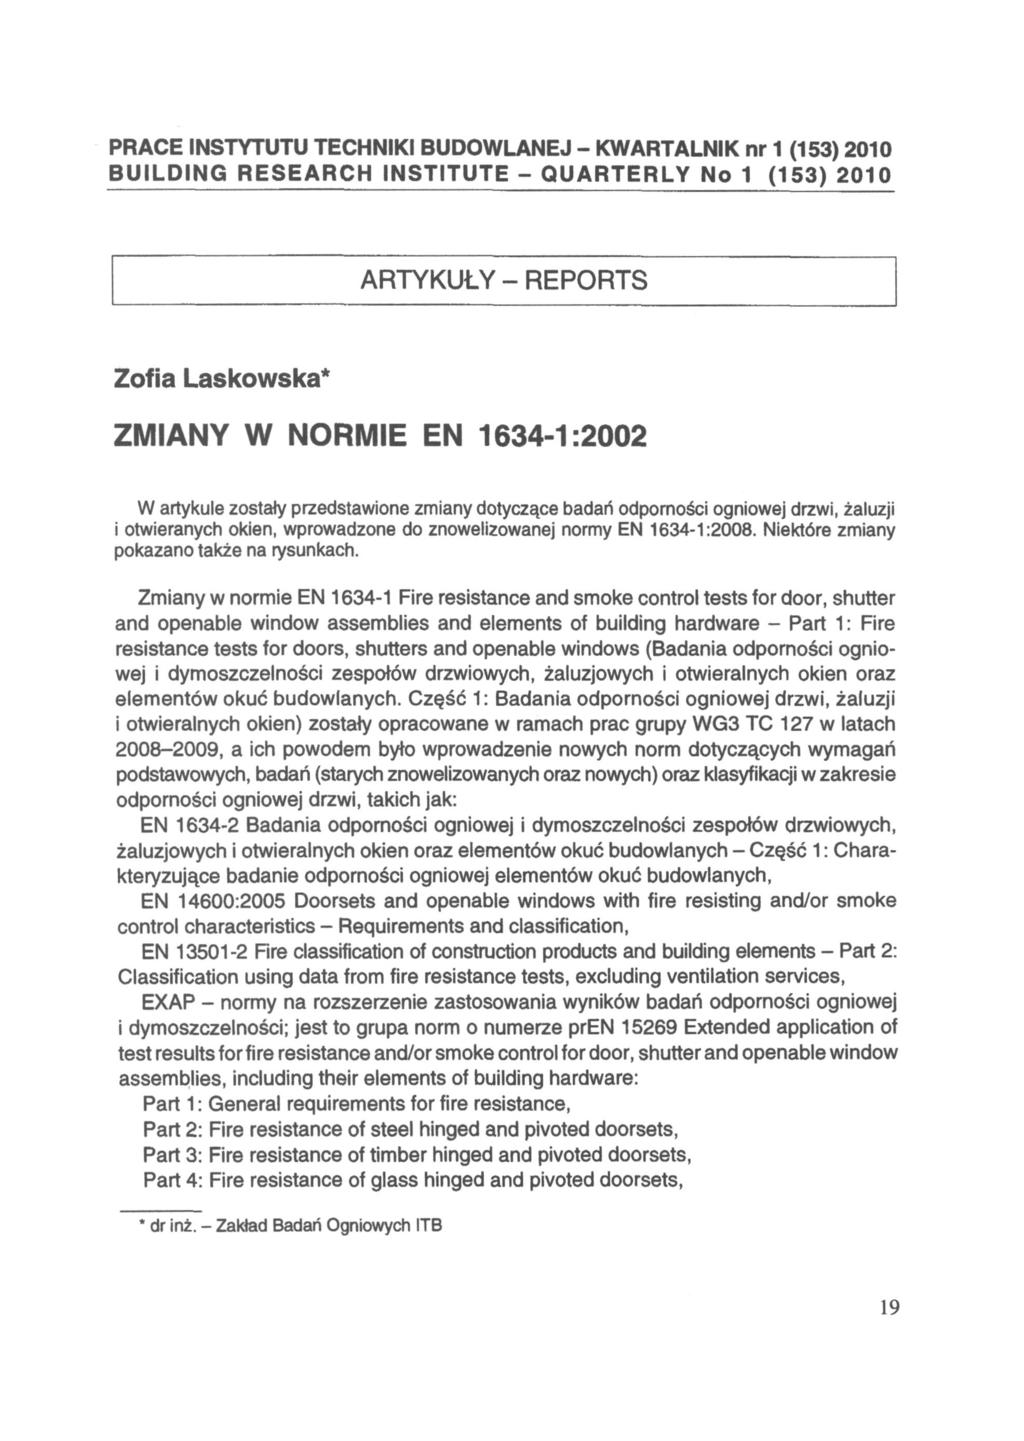 PRACE INSTYTUTU TECHNIKI BUDOWLANEJ - KWARTALNIK nr 1 (153) 2010 BUILDING RESEARCH INSTITUTE - QUARTERLY No 1 (153) 2010 ARTYKUŁY - REPORTS Zofia Laskowska* ZMIANY W NORMIE EN 1634-1:2002 W artykule